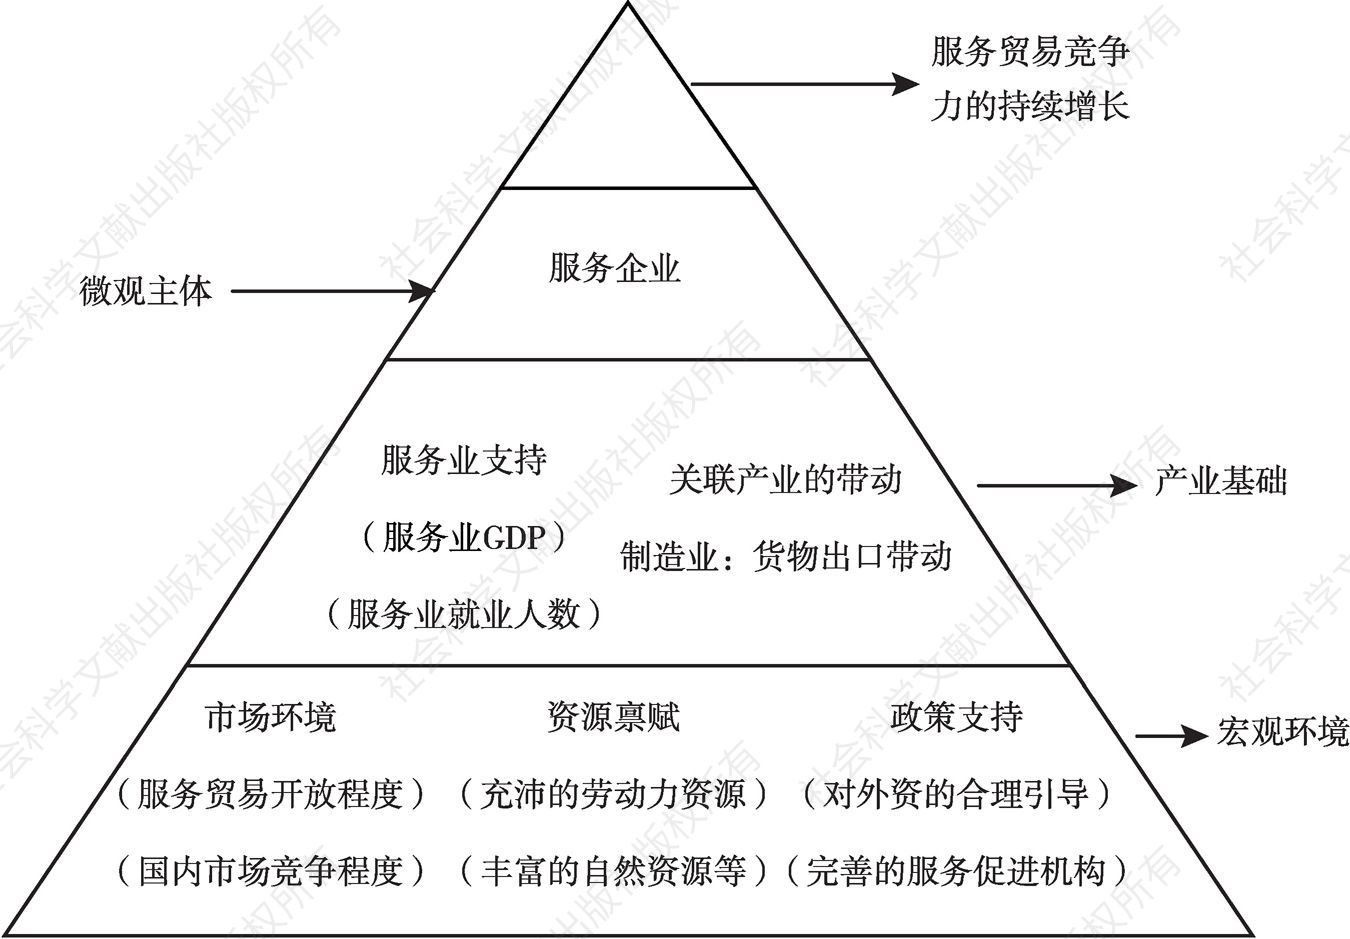 图2 一国服务贸易竞争力的“金字塔”模型